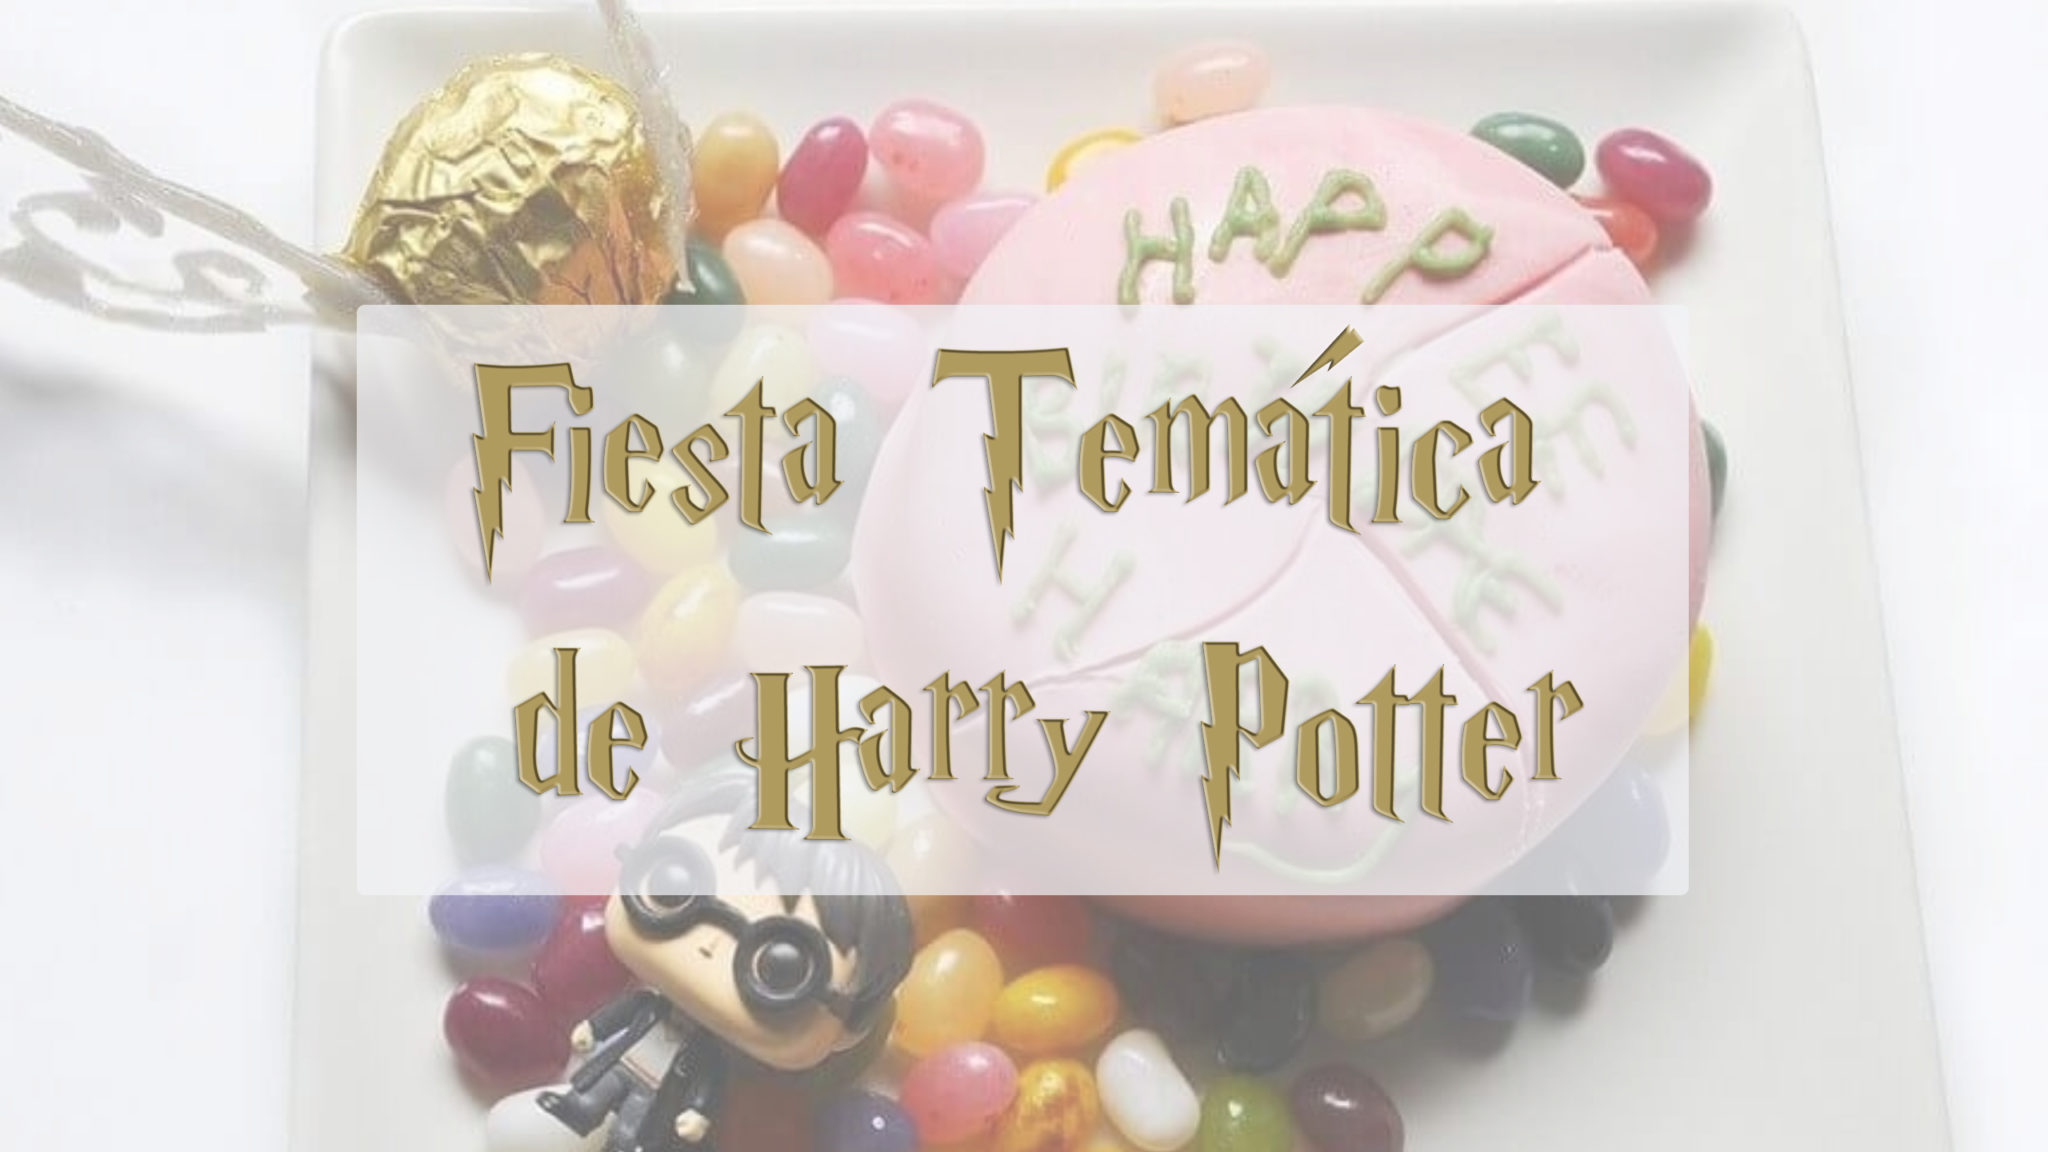 18 ideas para decorar fiesta de Harry Potter  Cumpleaños harry potter,  Decoración de fiestas infantiles, Decoración de fiesta